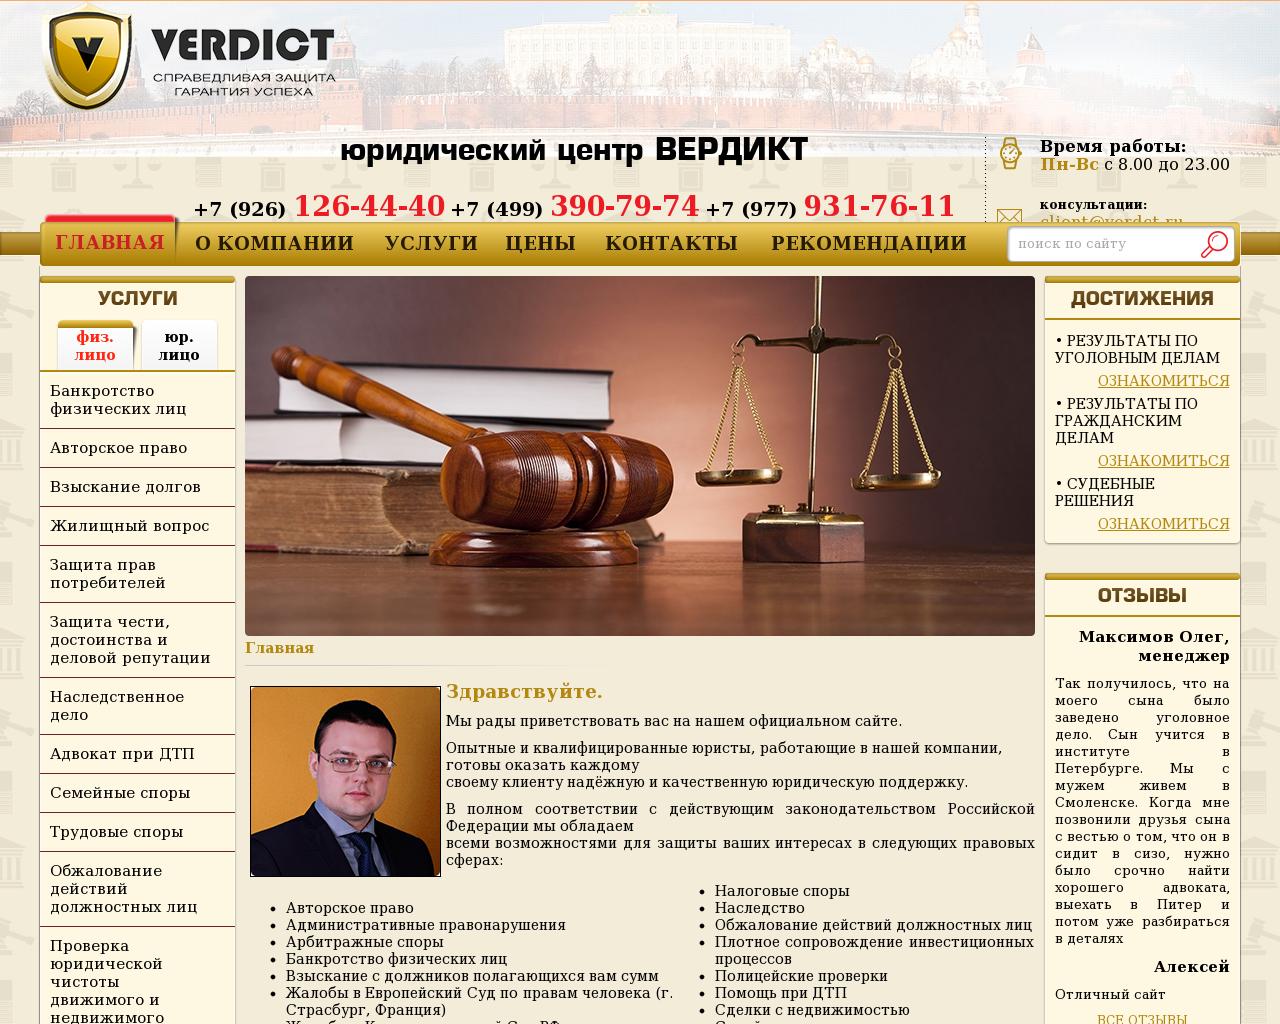 Изображение сайта verdct.ru в разрешении 1280x1024